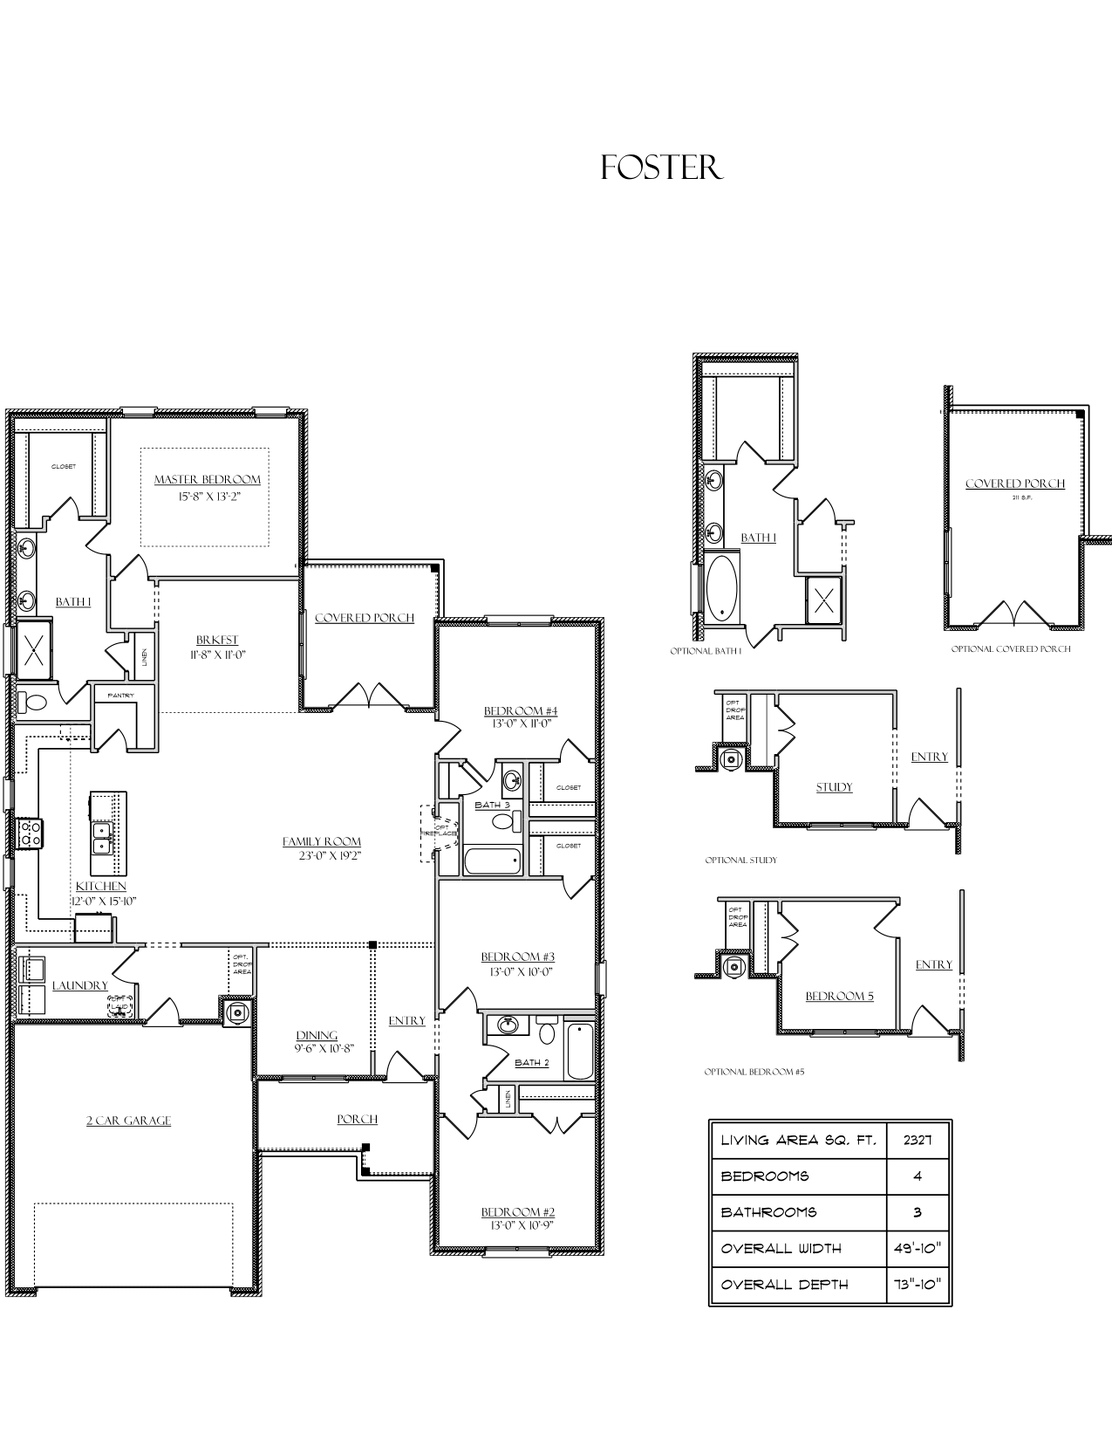 Foster Floor Plans